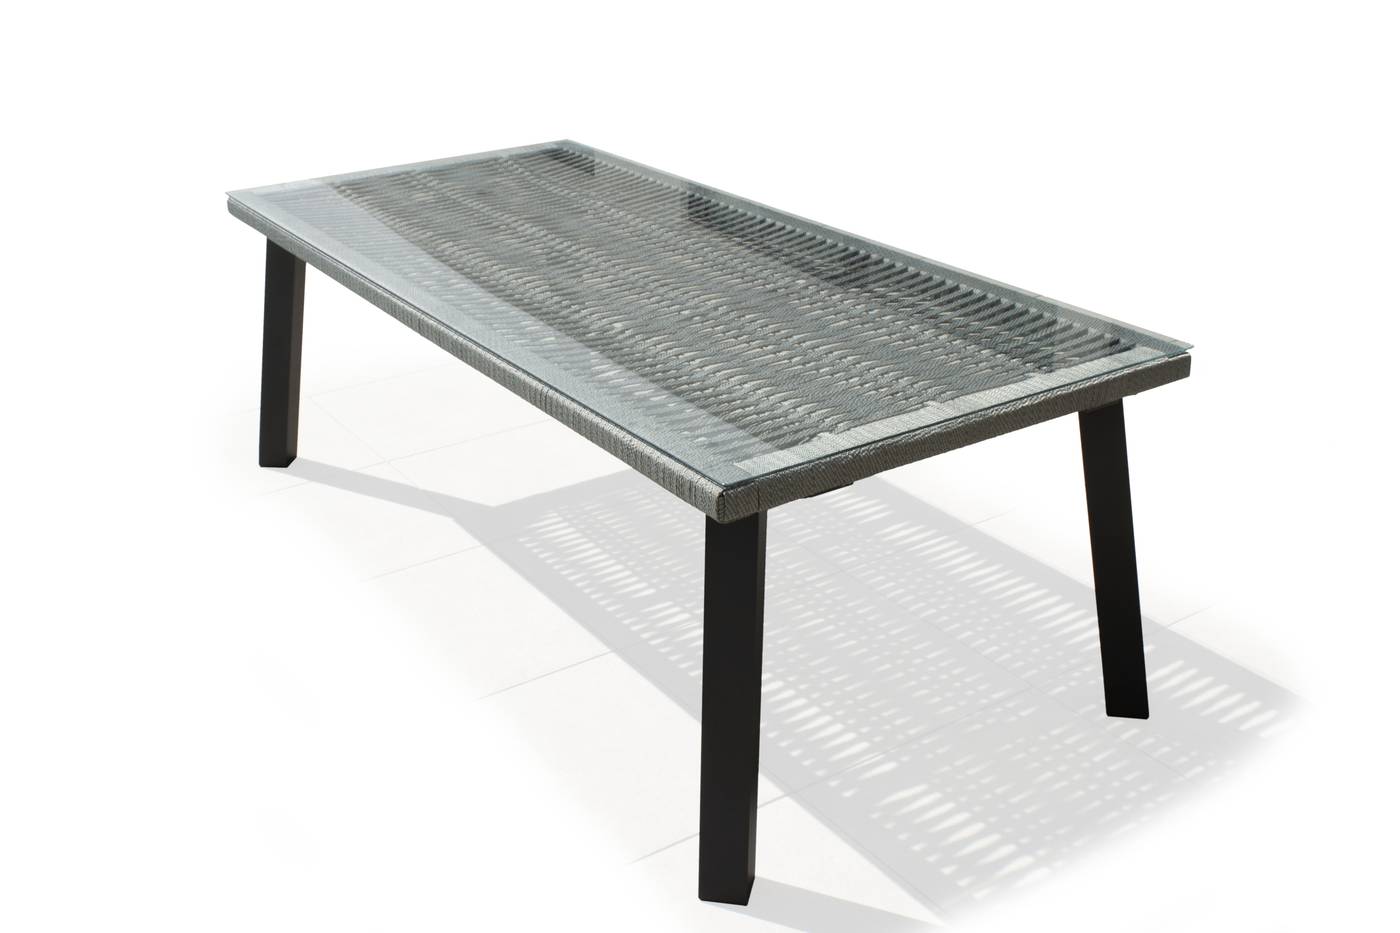 Mesa rectangular de 220 cm, con tablero de cuerda y tapa de cristal templado. Estructura robusta de aluminio color gris o champagne.